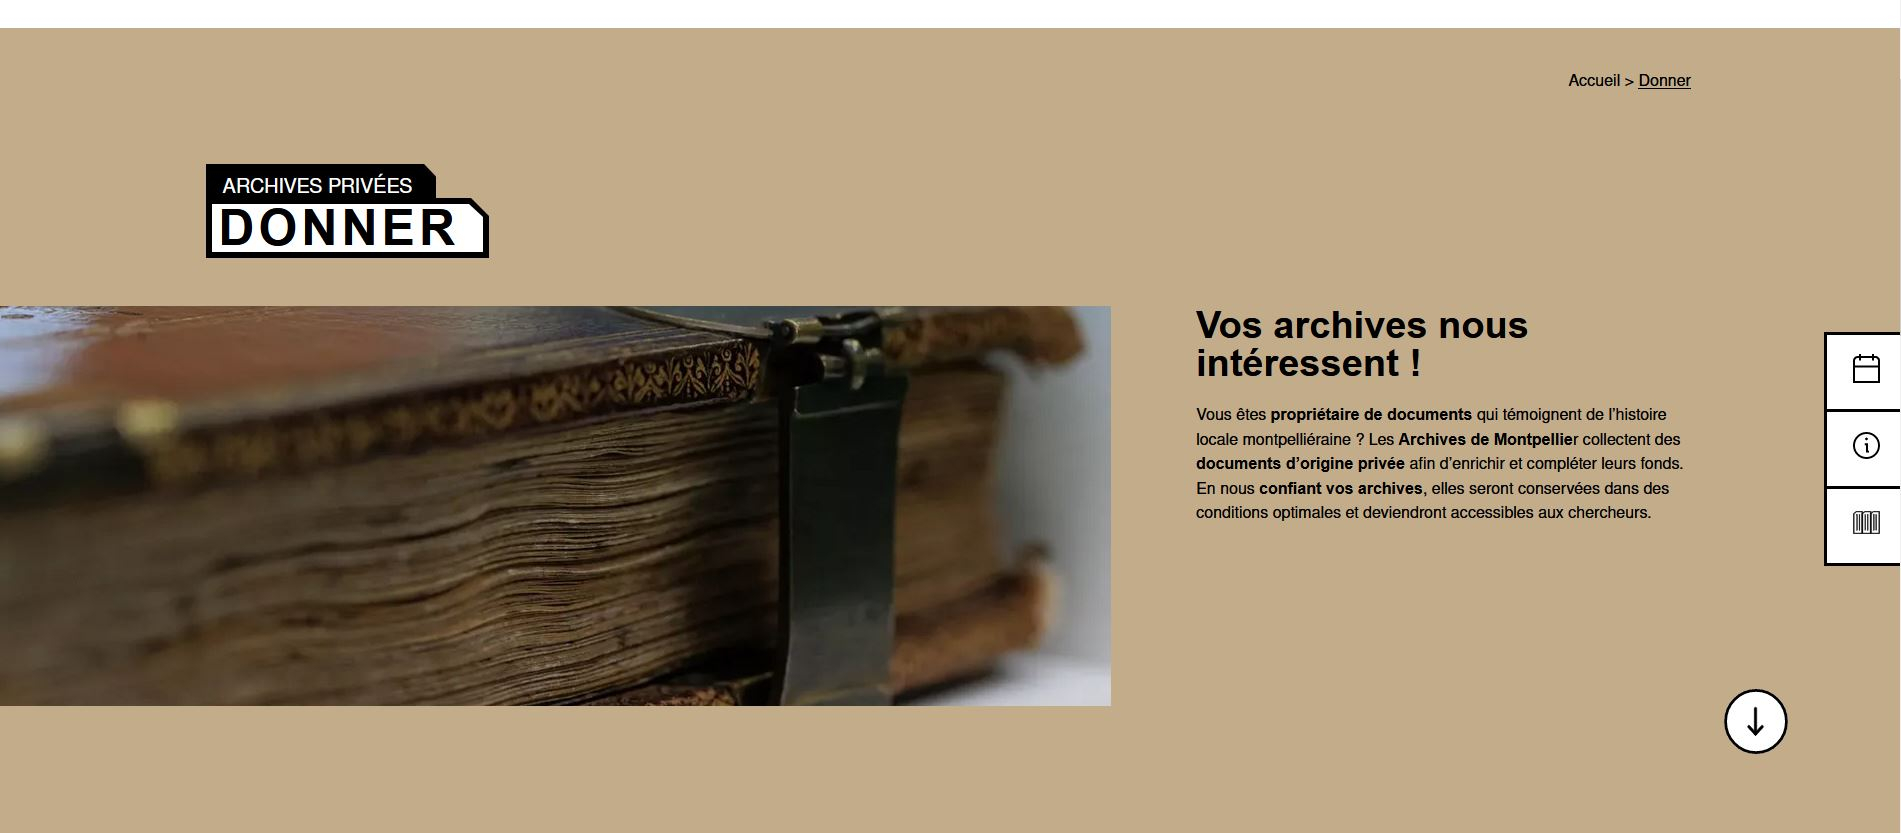 Rubrique "Donner" sur le nouveau site des Archives de Montpellier